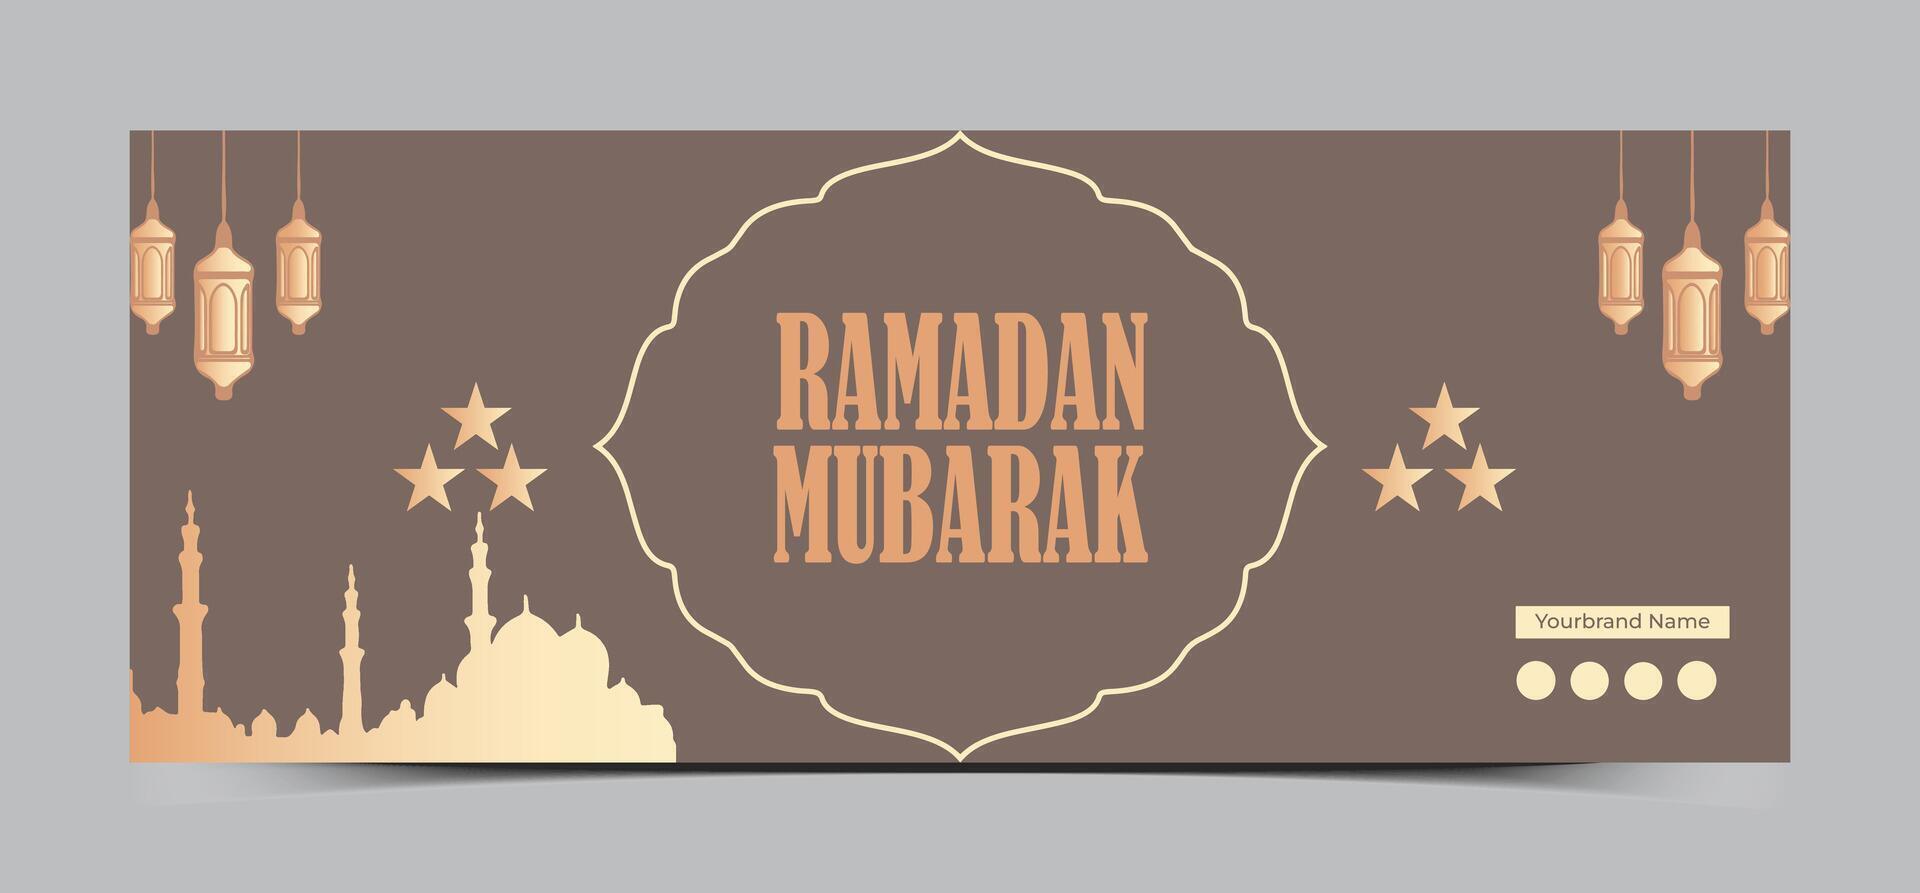 Ramadan Mubarak social media cover design template vector